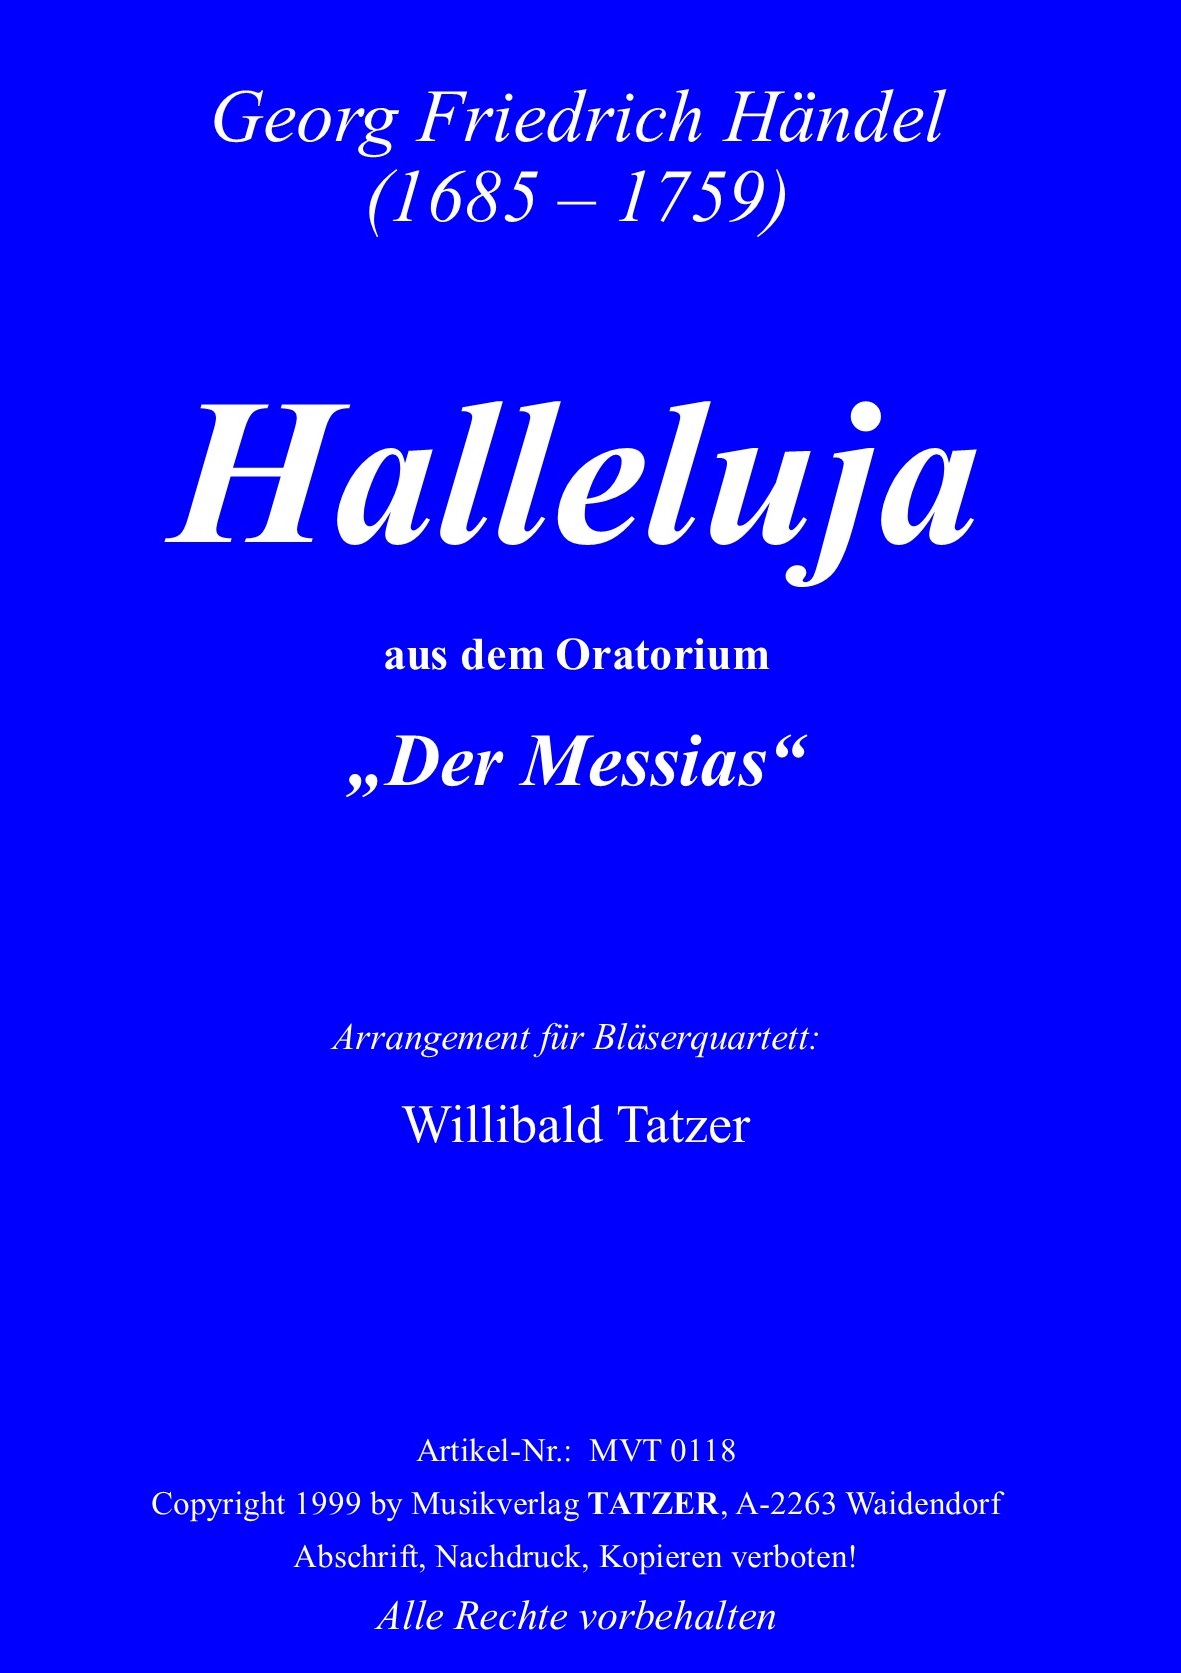 Halleluja (C), Georg Friedrich Händel / Willibald Tatzer